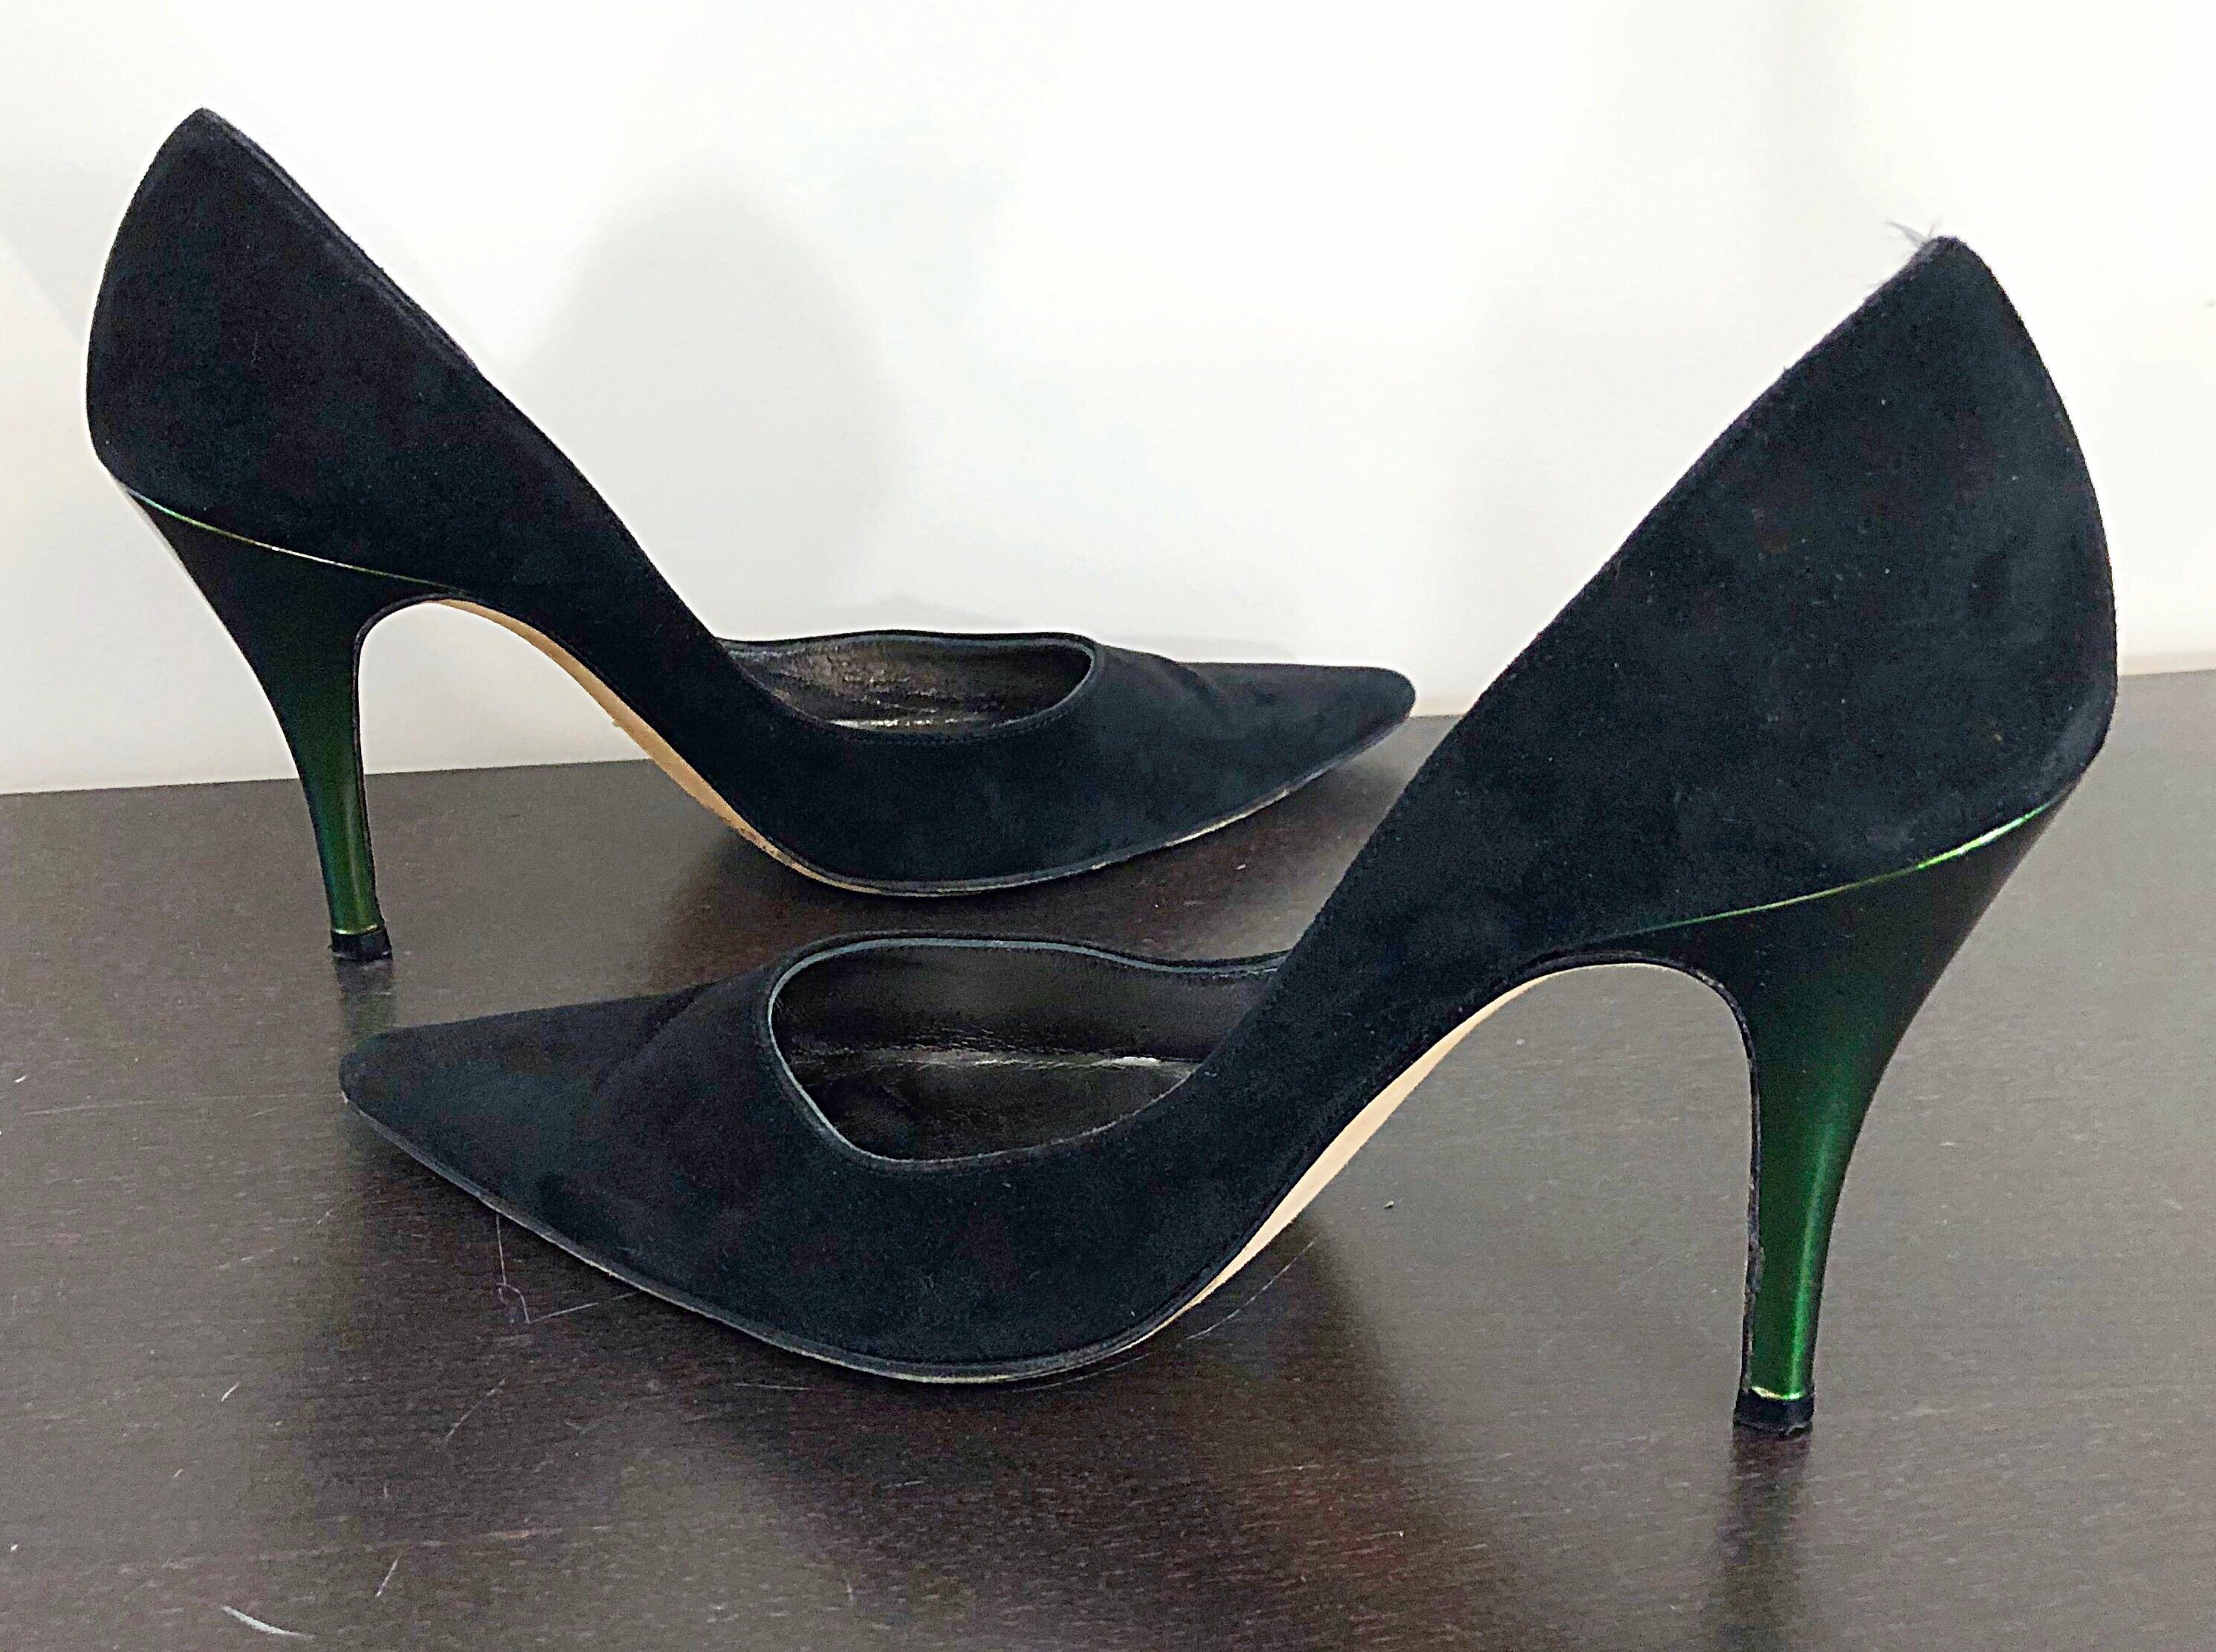 Sexy Vintage Ende der 90er Jahre CHRISTIAN LACROIX schwarzem Wildleder und grünen metallischen hohen Absatz spitzen Zehen Schuhe! Schlankes Design, mit modernster Technik. Metallisch schillernder grüner Absatz. Der perfekte schwarze Absatz mit genau